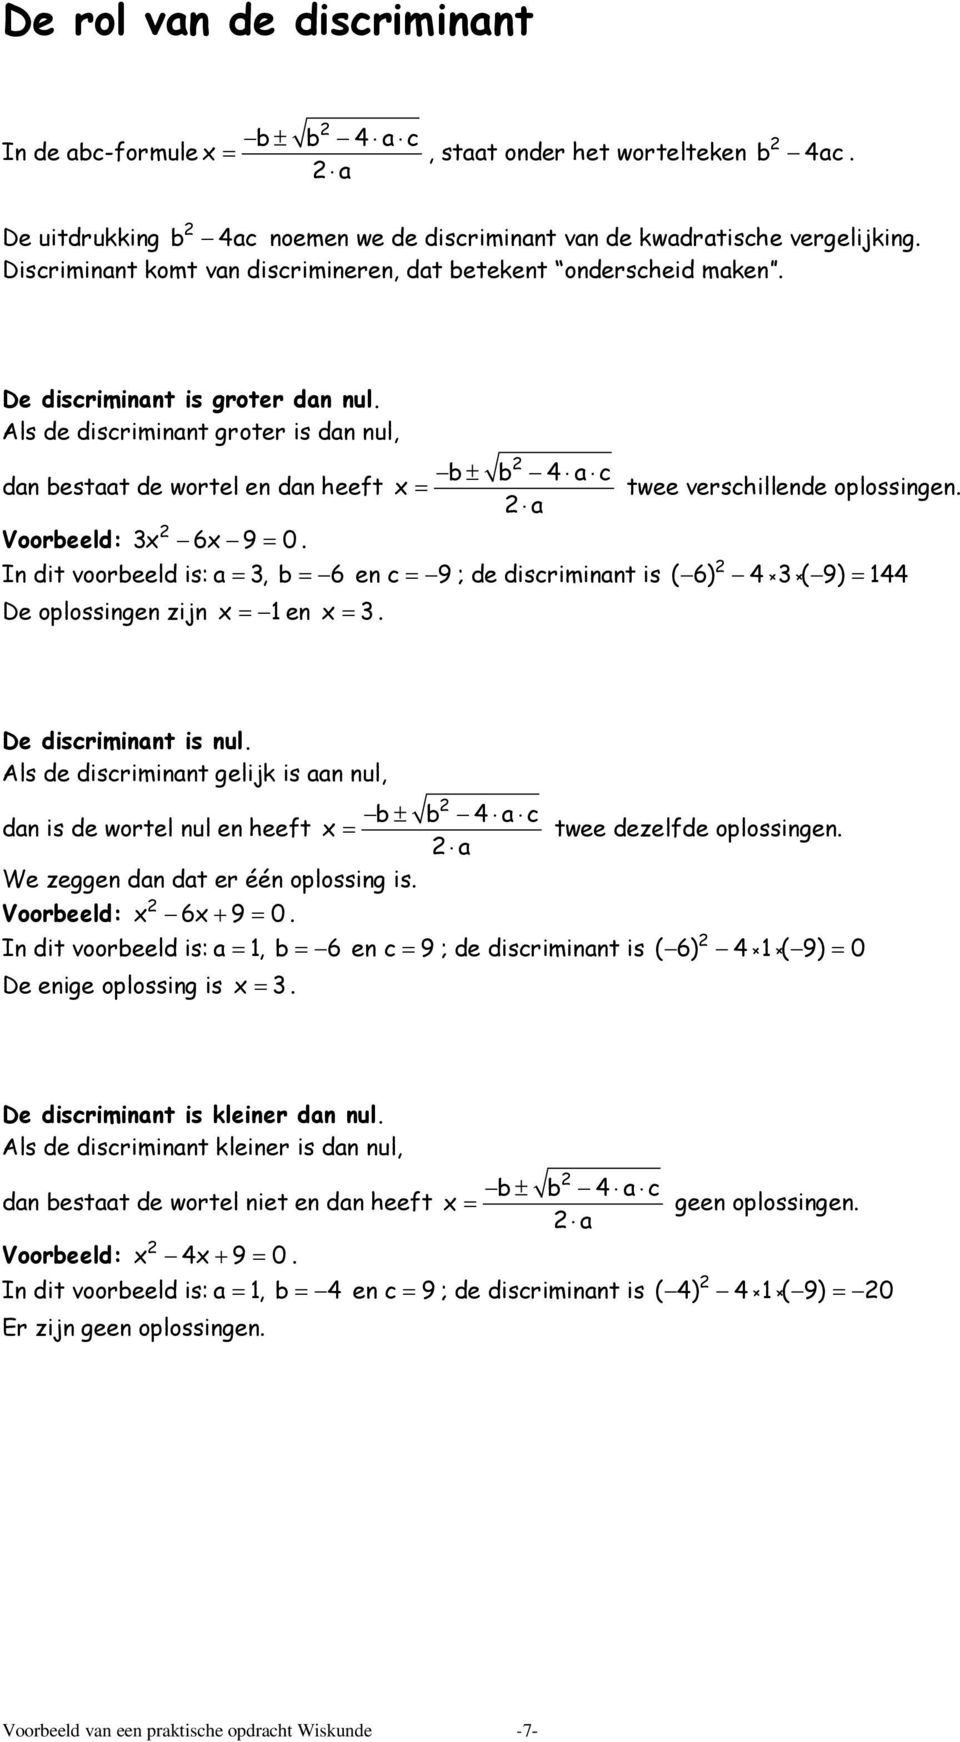 Als de discriminant groter is dan nul, dan bestaat de wortel en dan heeft Voorbeeld: 3x 6x 9 = 0.